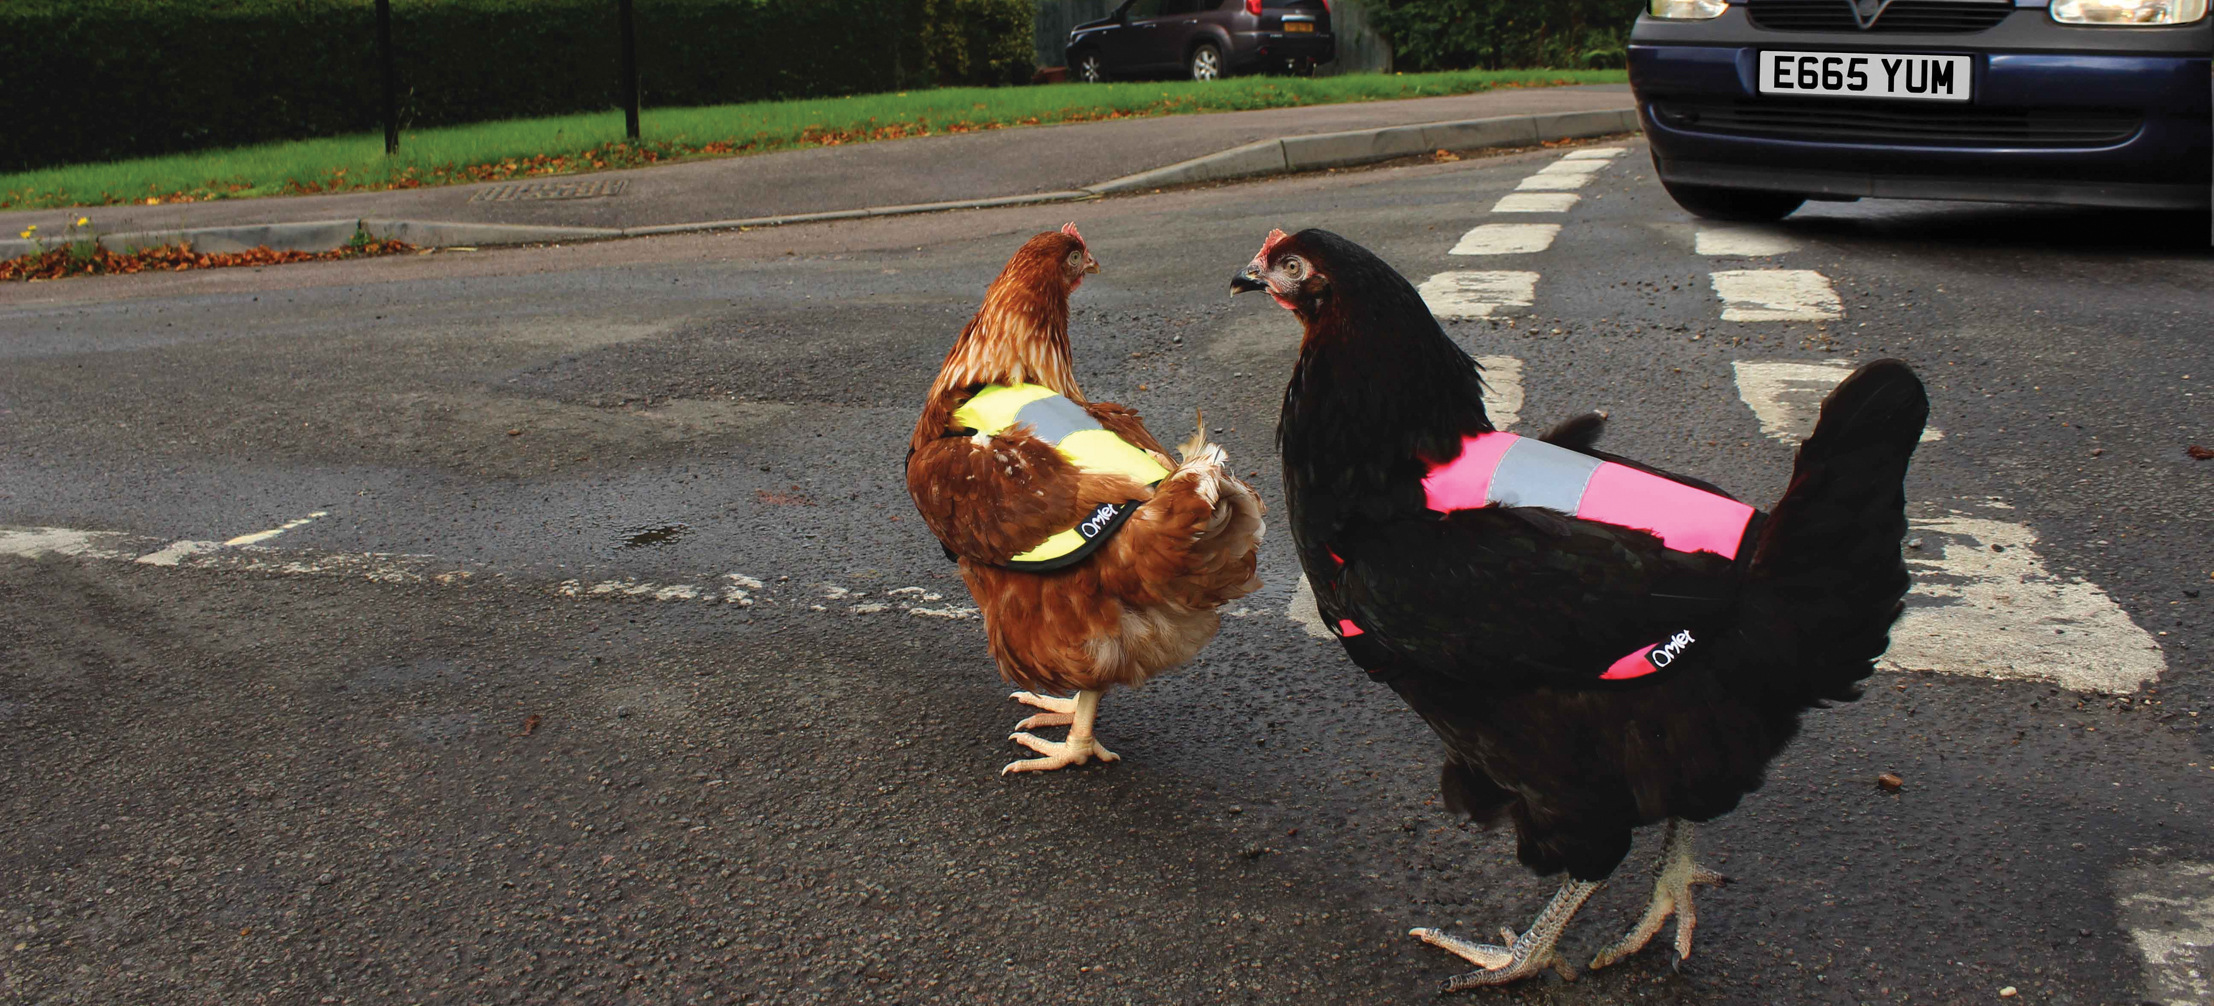 Kippen houden in de stad - kippen steken de weg over in Hi-Vis kippenvesten